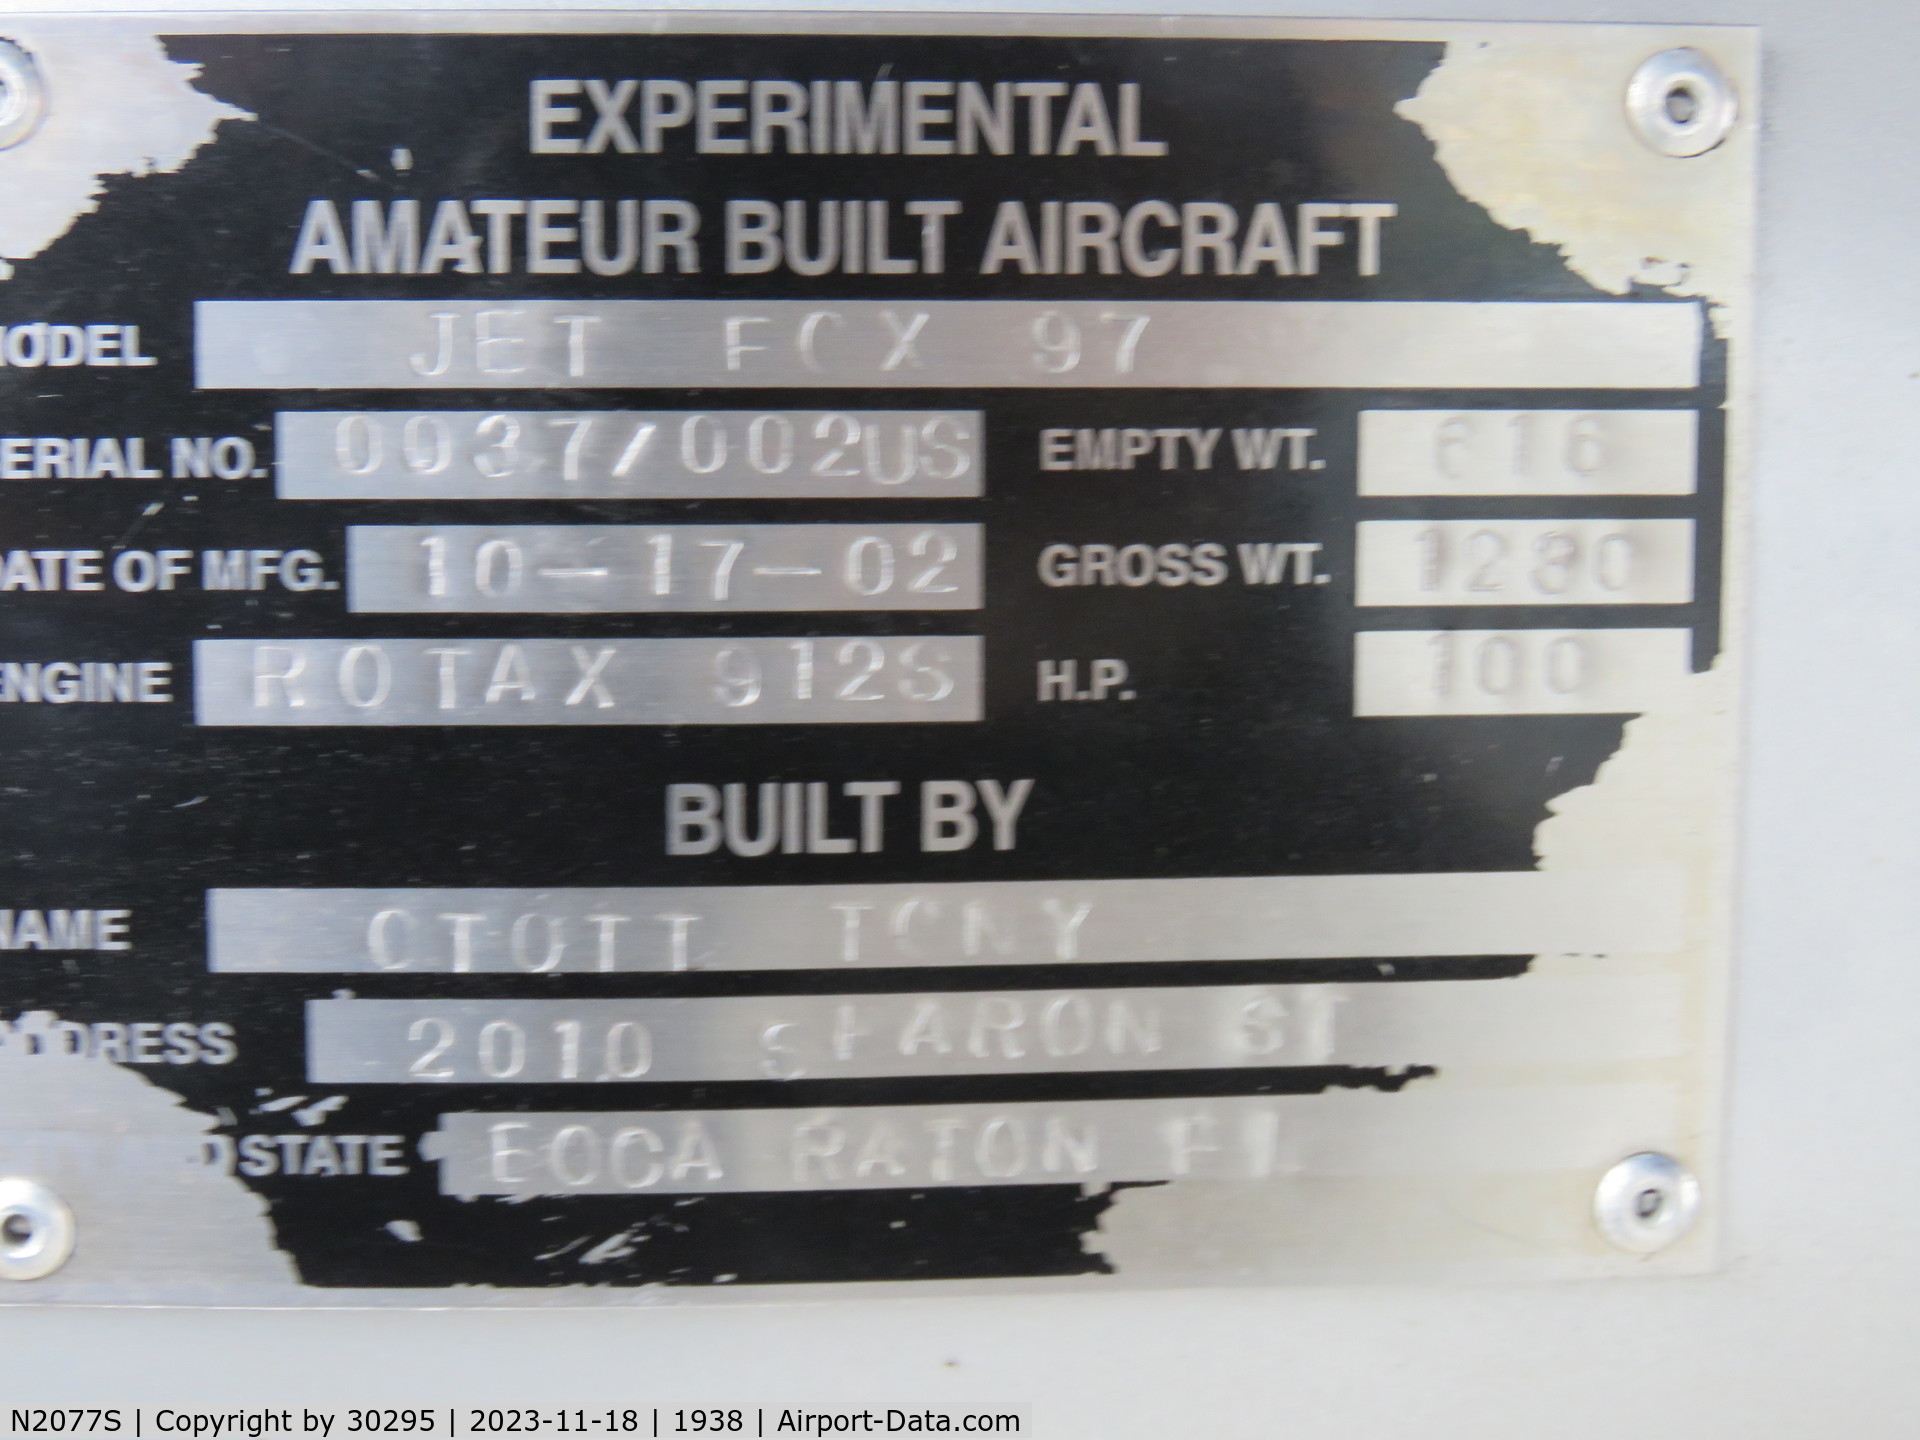 N2077S, 2002 Euro Ala Jet Fox JF.97 C/N 0037/002-US, ID plate